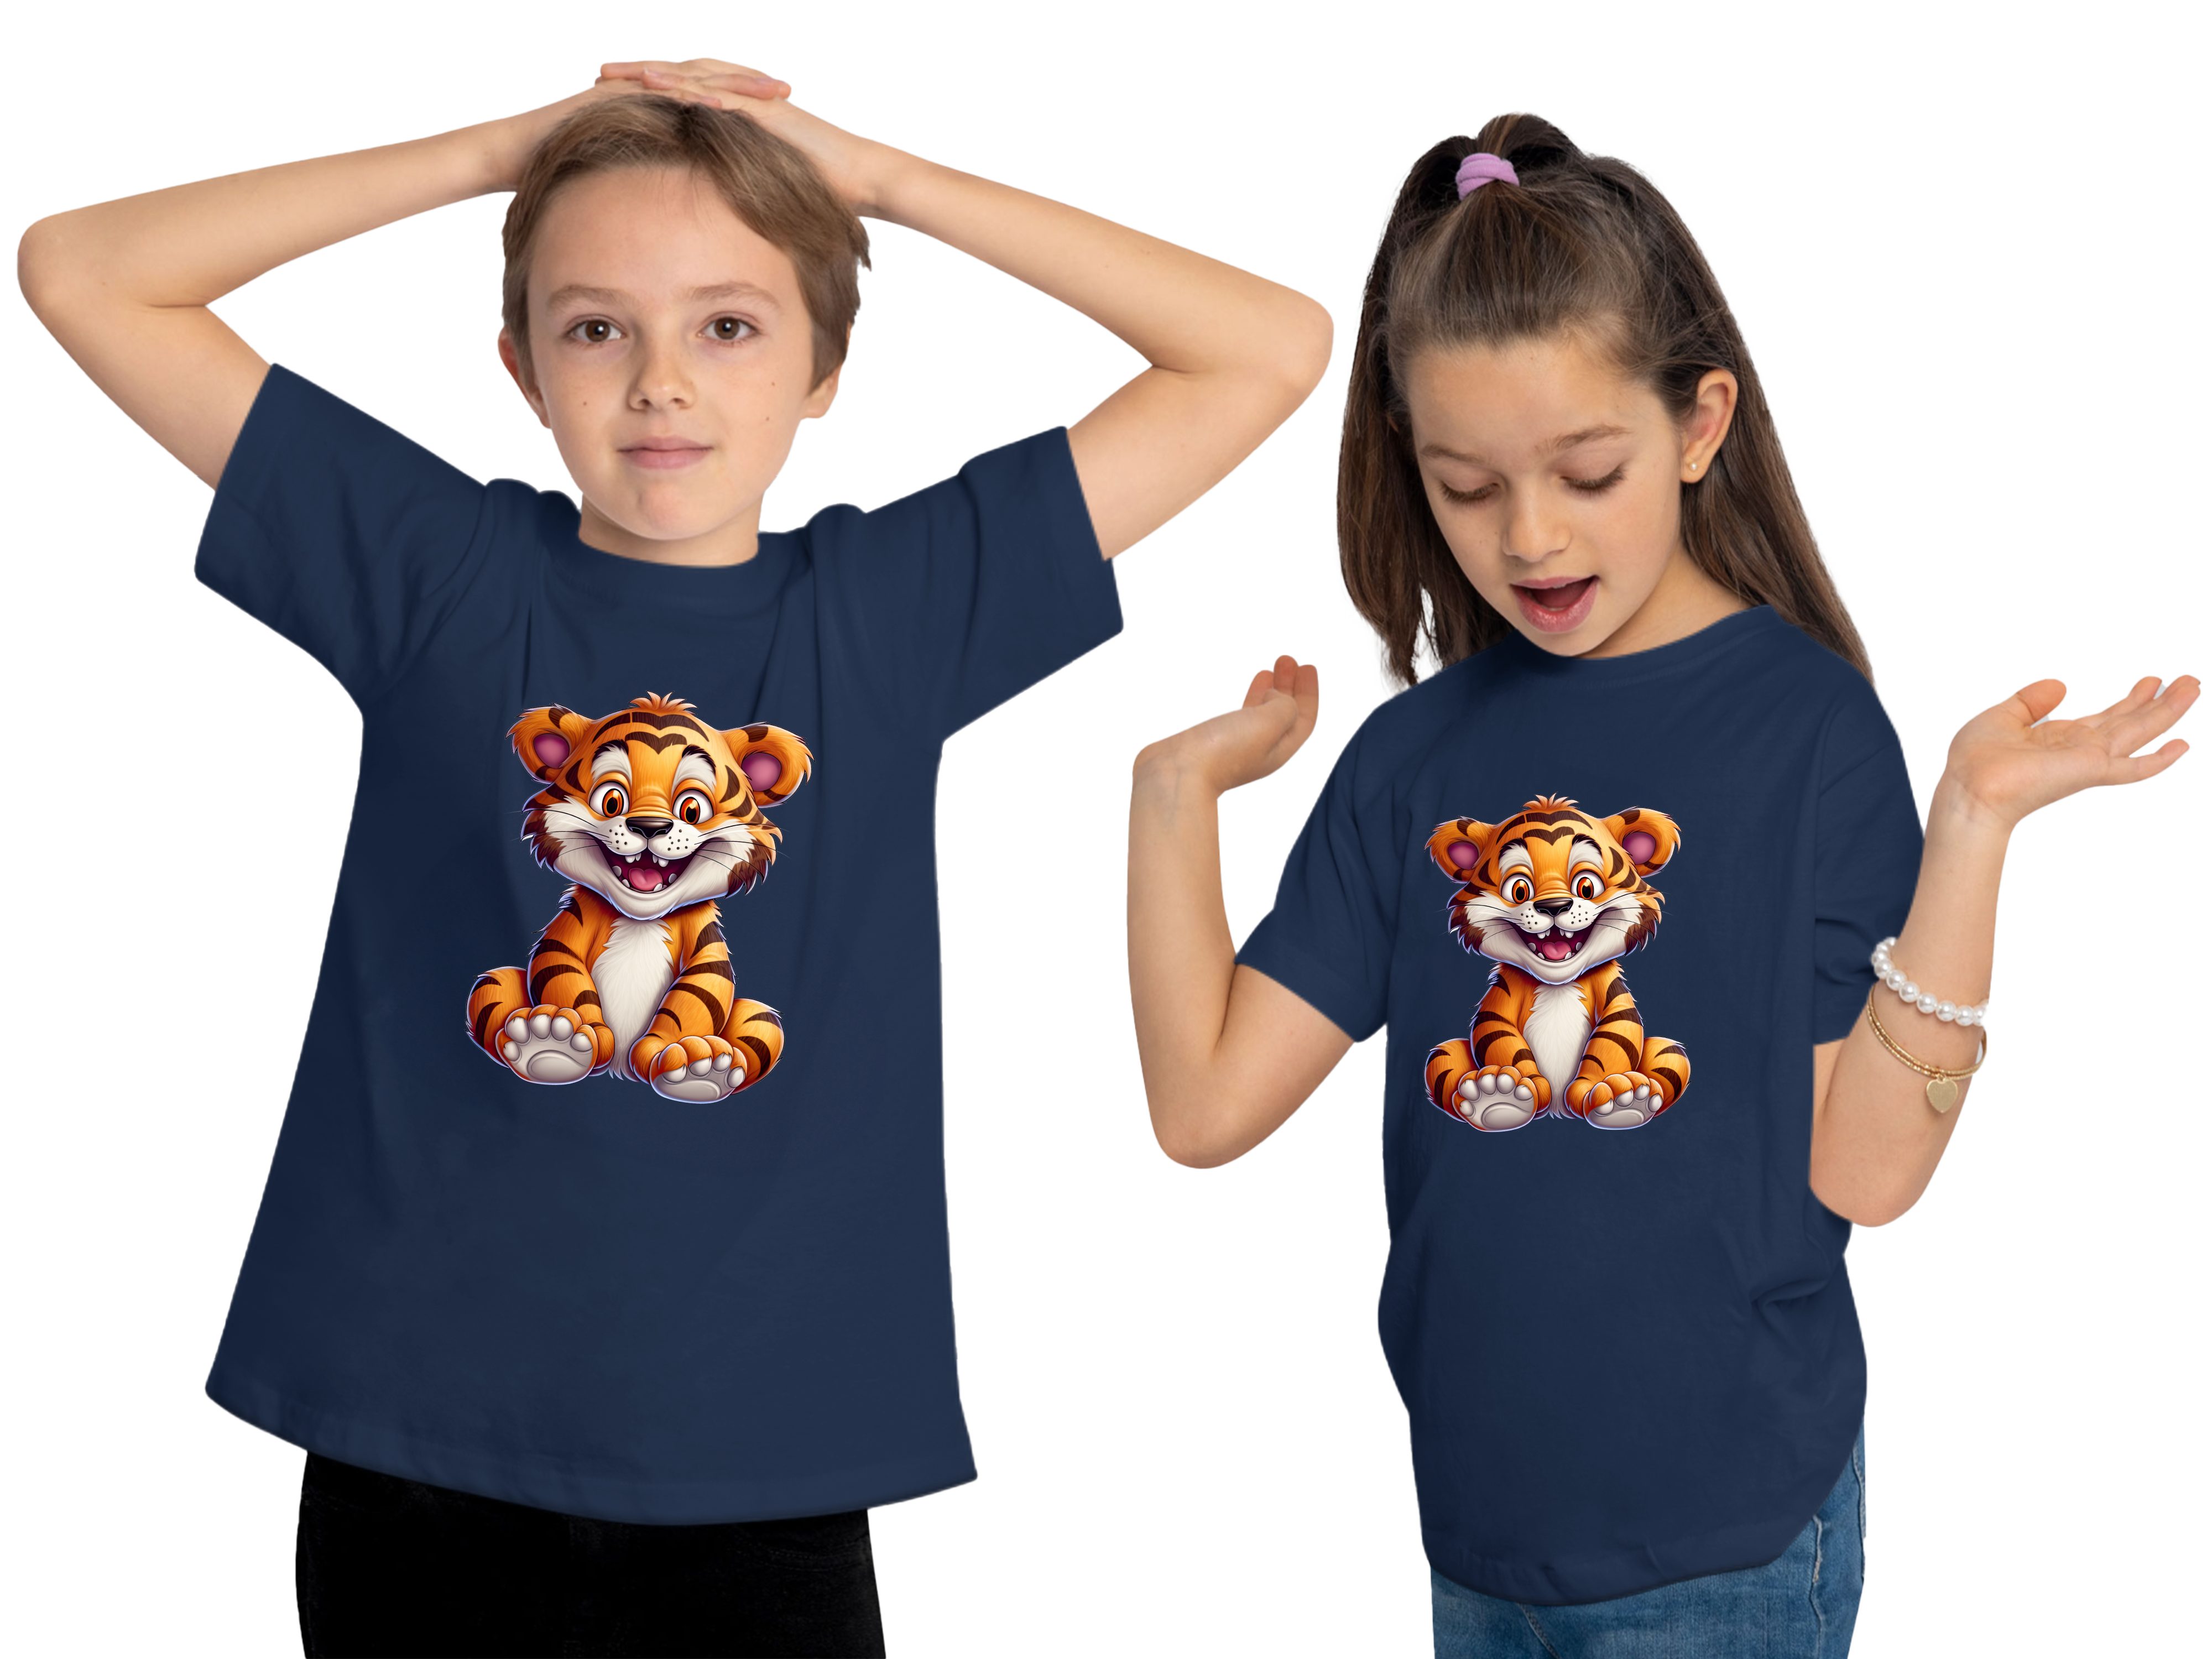 mit Wildtier - Tiger bedruckt i278 Kinder Print Aufdruck, Baumwollshirt navy T-Shirt blau Baby MyDesign24 Shirt